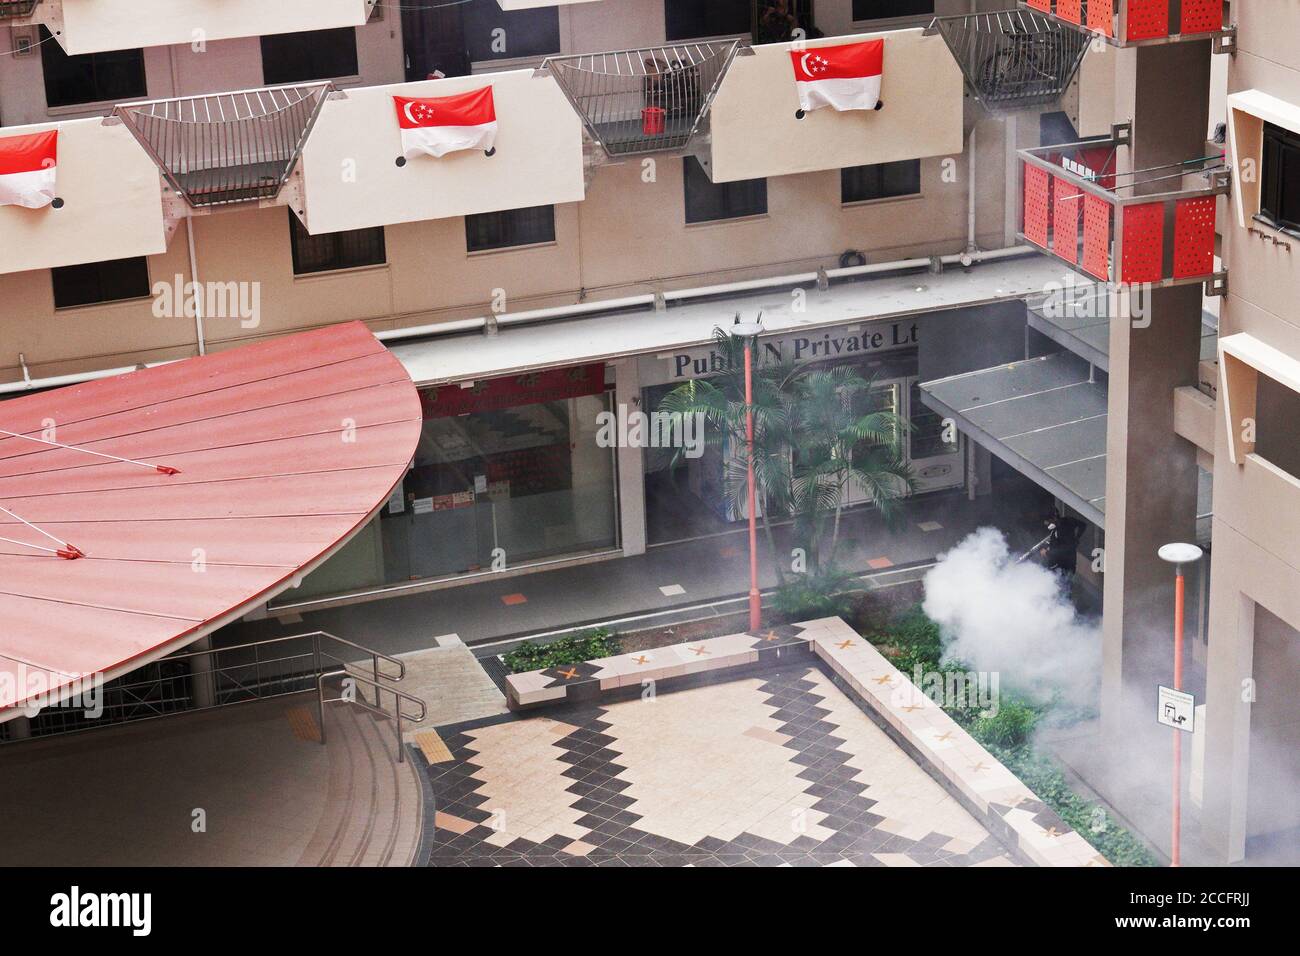 (200822) -- SINGAPORE, 22 agosto 2020 (Xinhua) -- UN operaio fumiga un bene immobiliare pubblico per uccidere le zanzare Aedes come parte della prevenzione contro le infezioni da dengue a Singapore, 22 agosto 2020. (Foto di Deng Zhiwei/Xinhua) Foto Stock